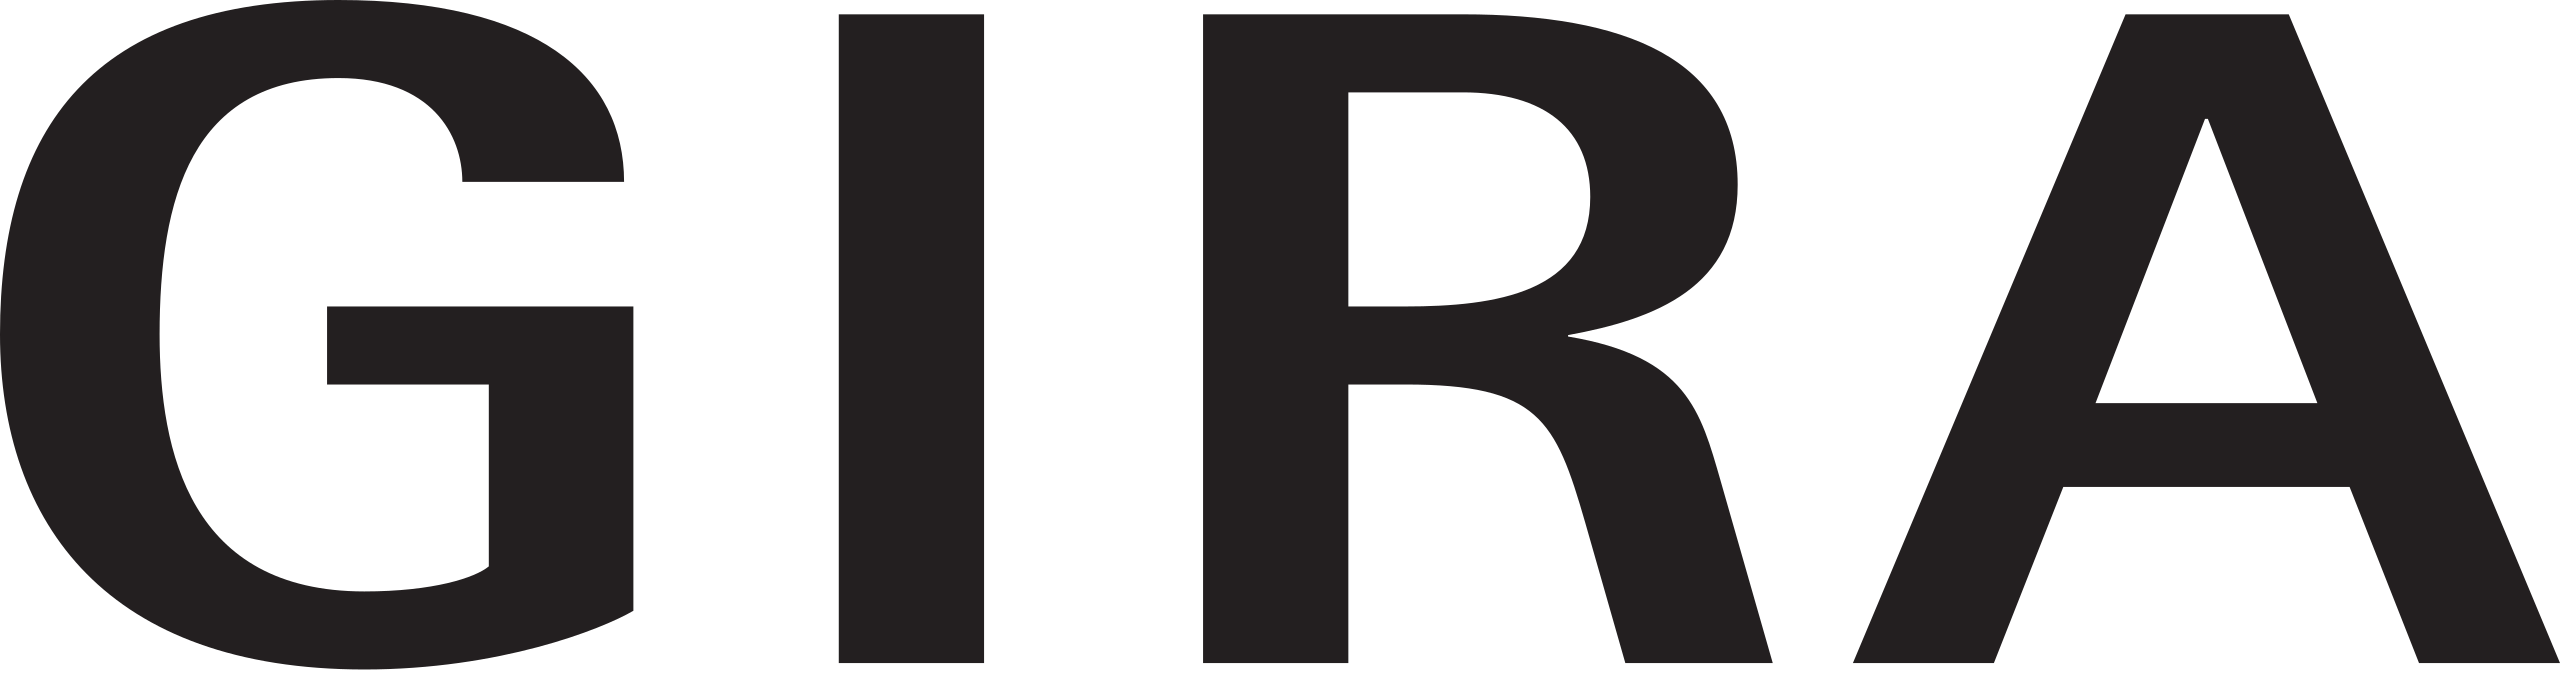 Logo Hersteller Gira